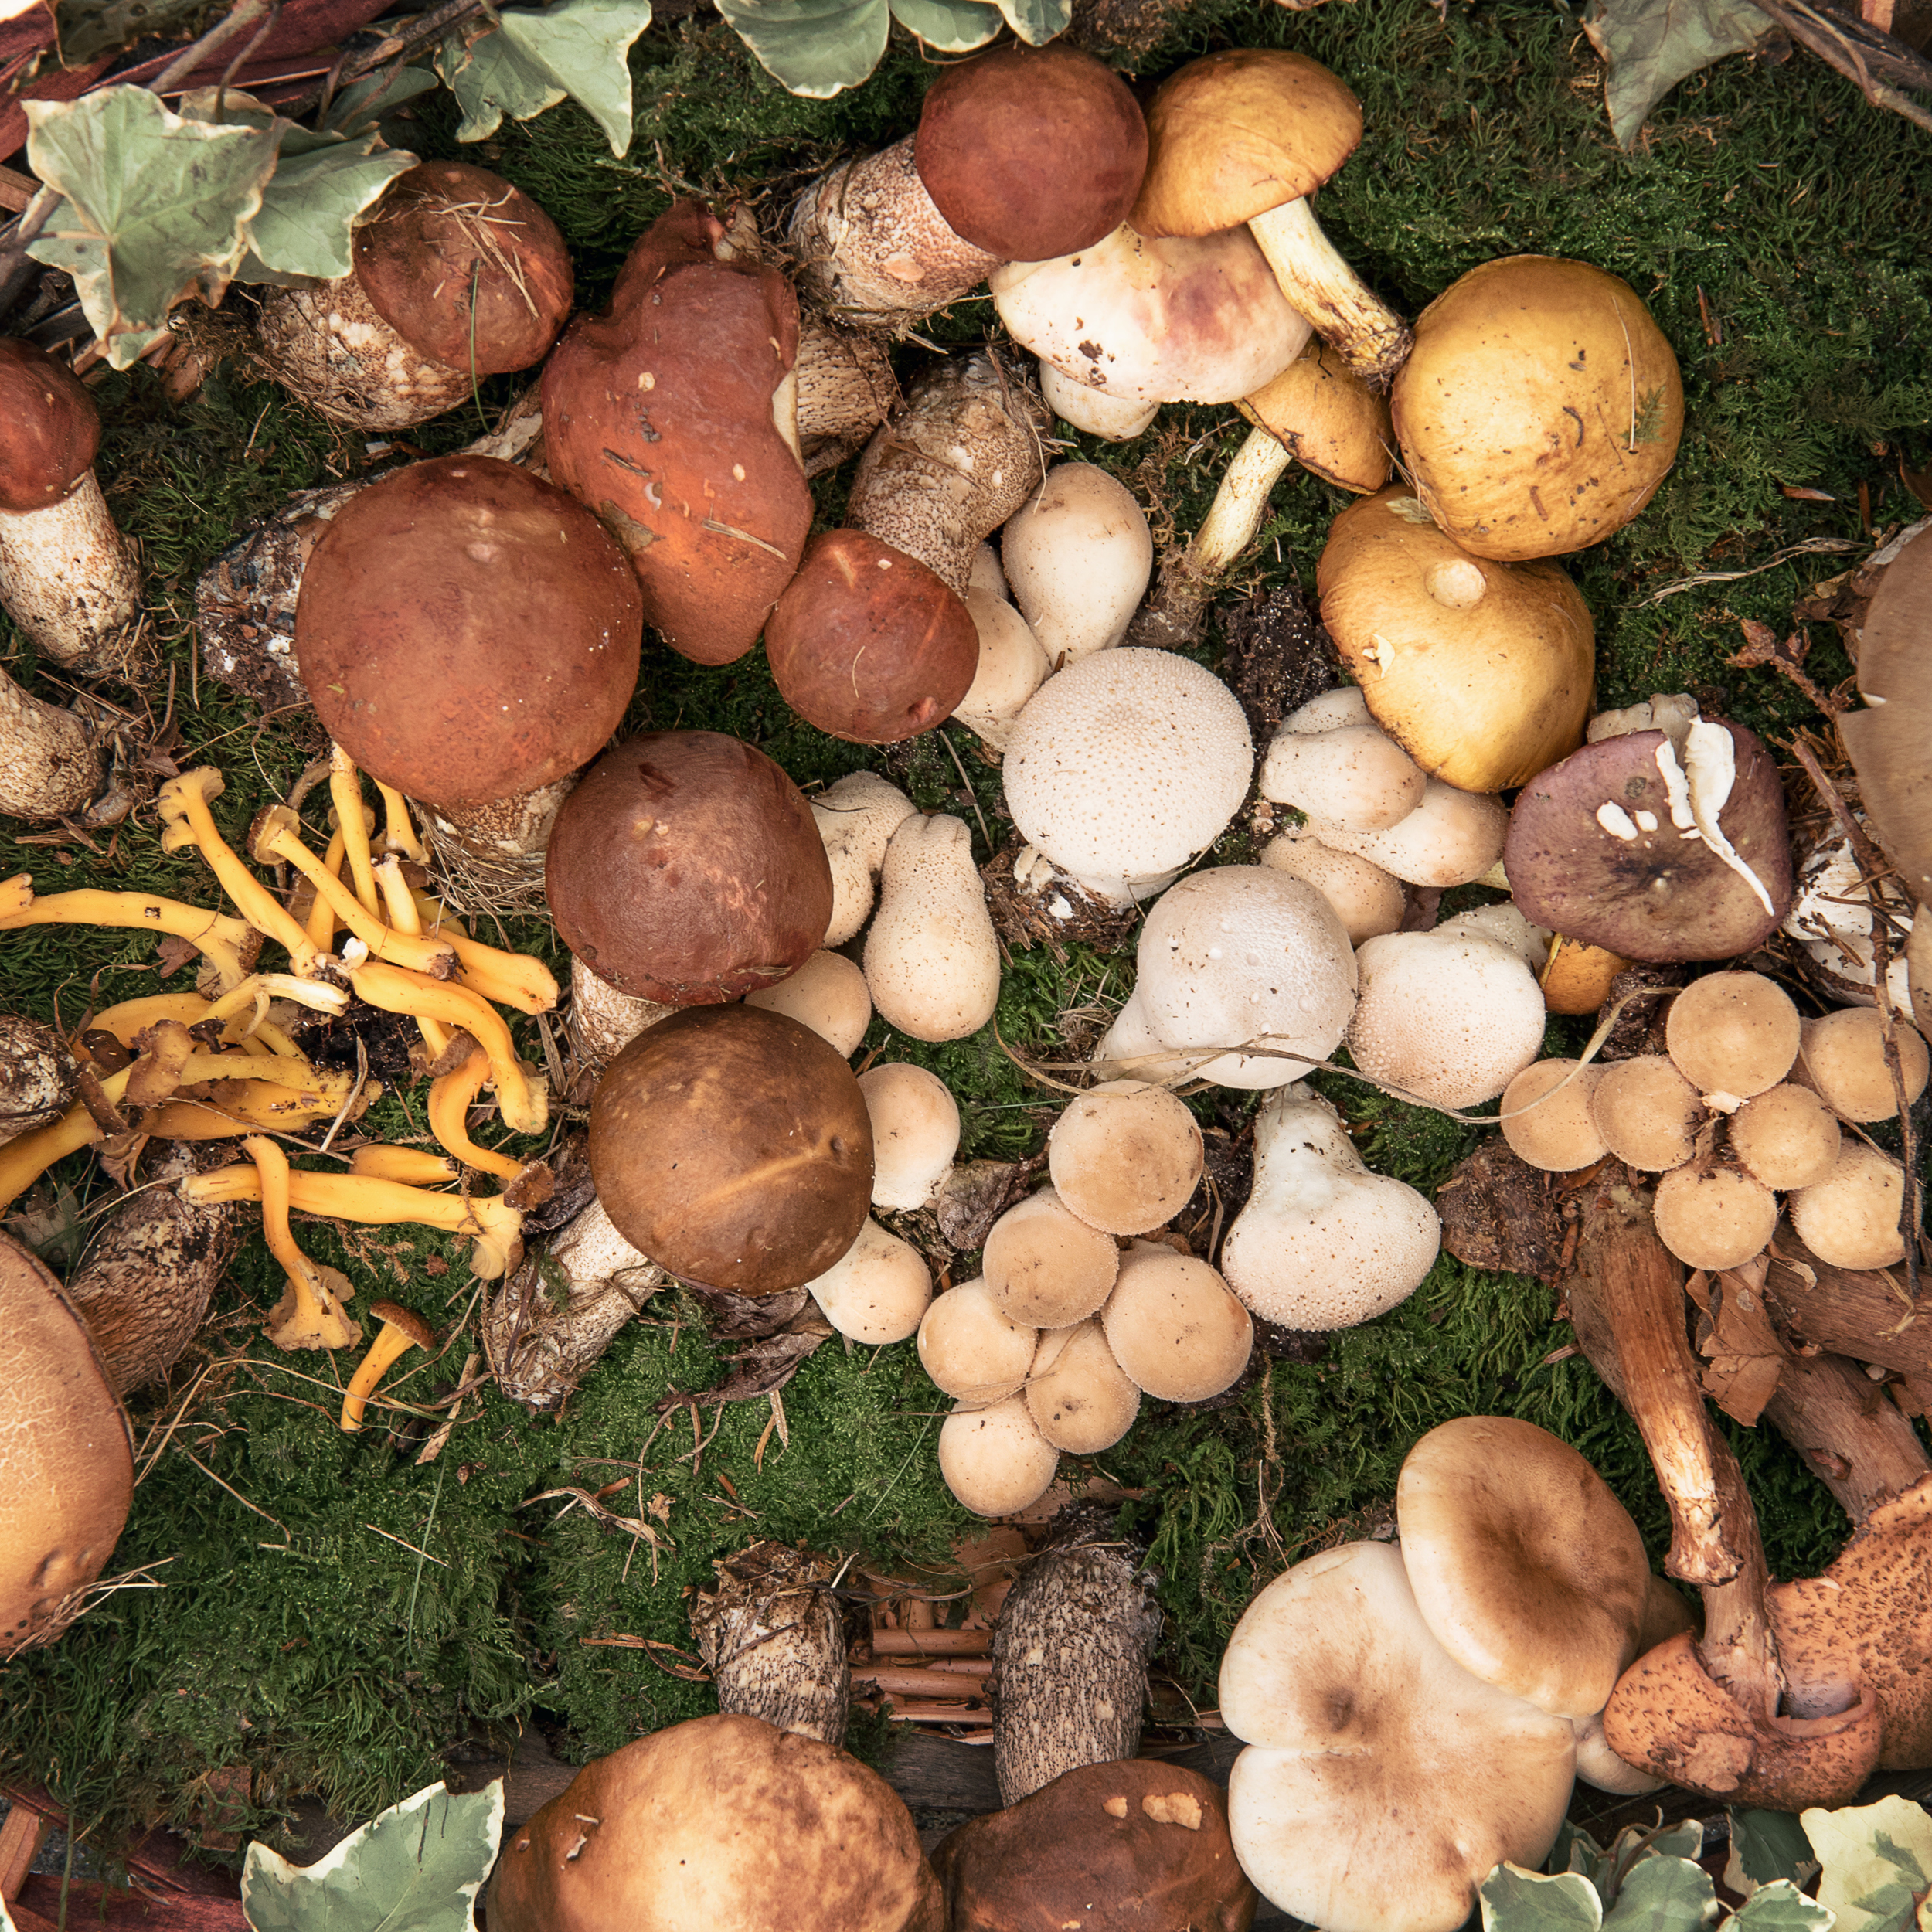 Comment consommer sans risque des champignons ramassés en forêt ?